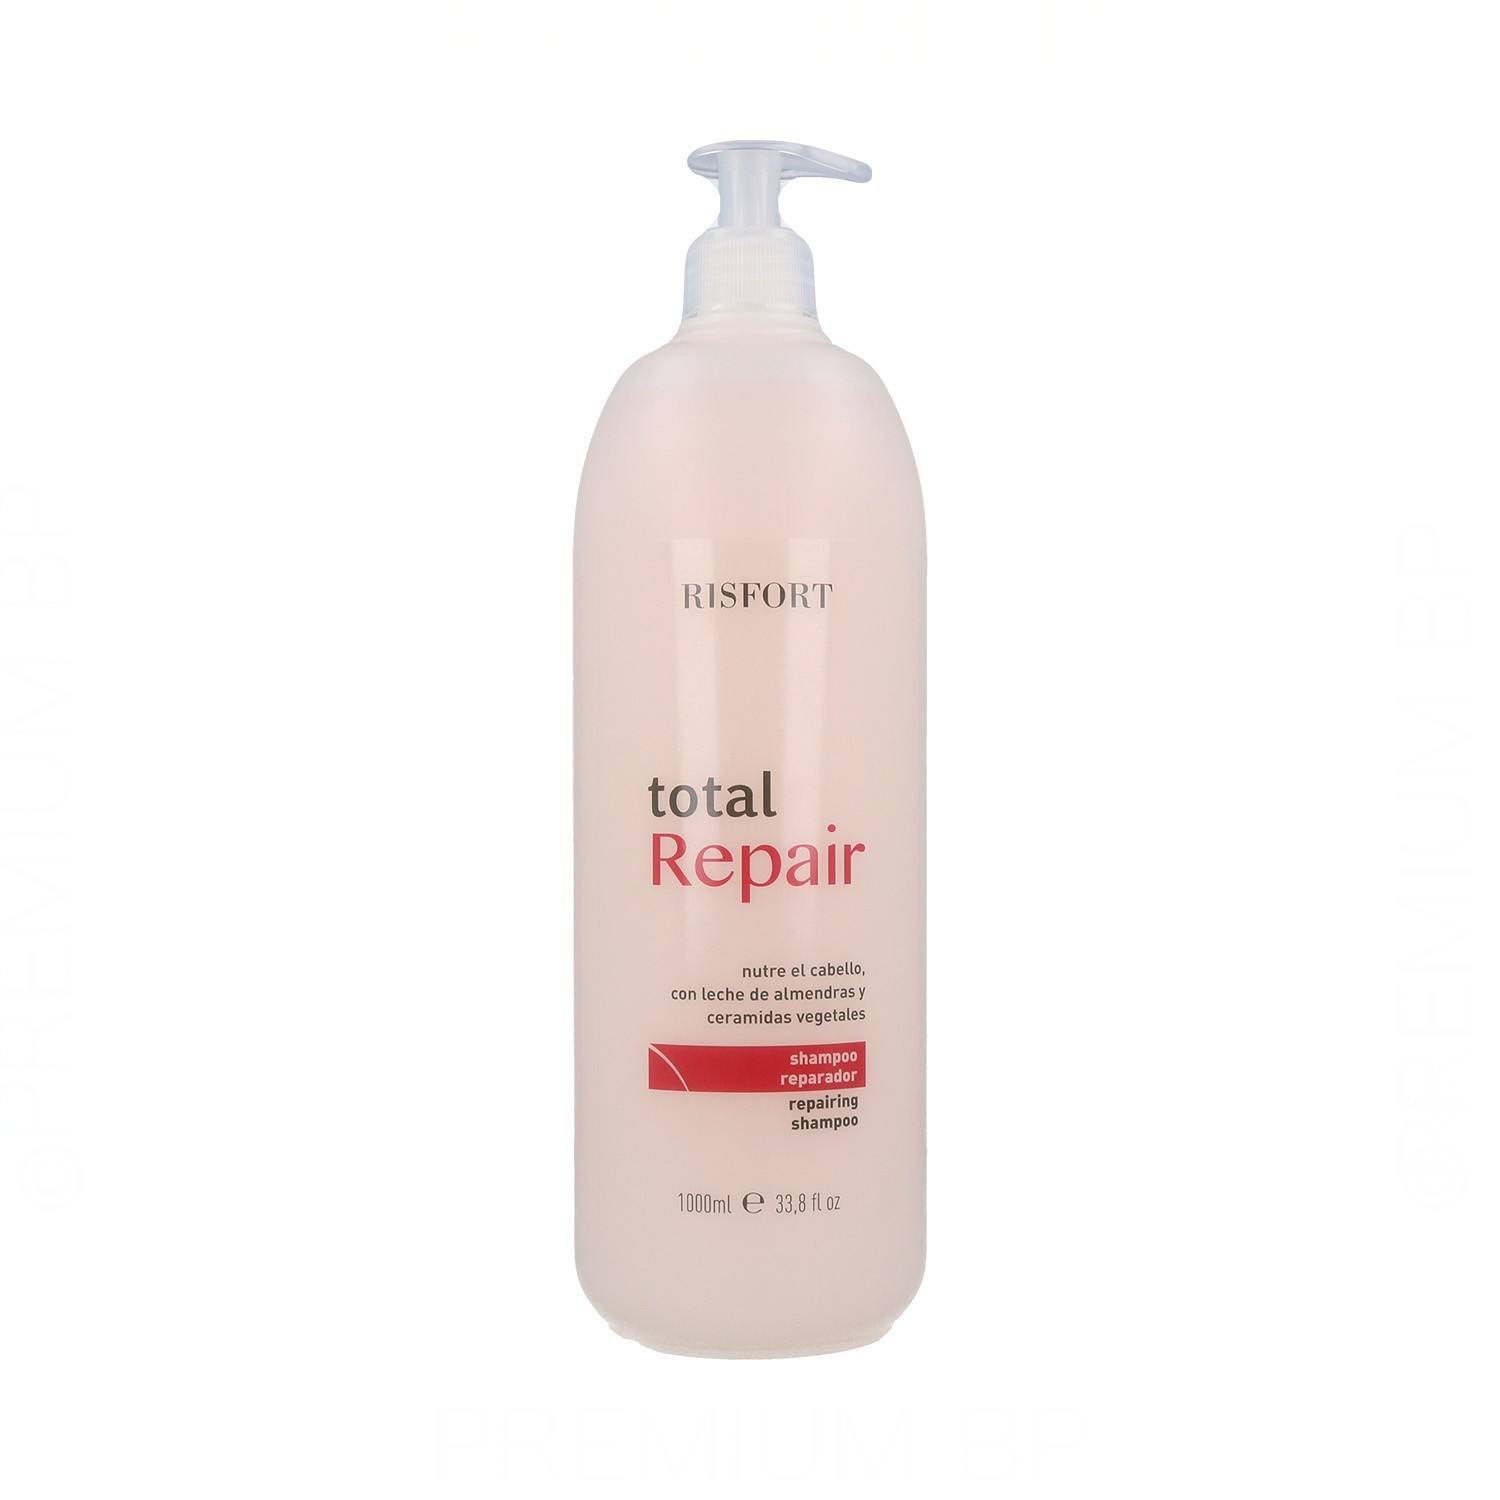 Risfort Total Repair Shampooing 1000 ml